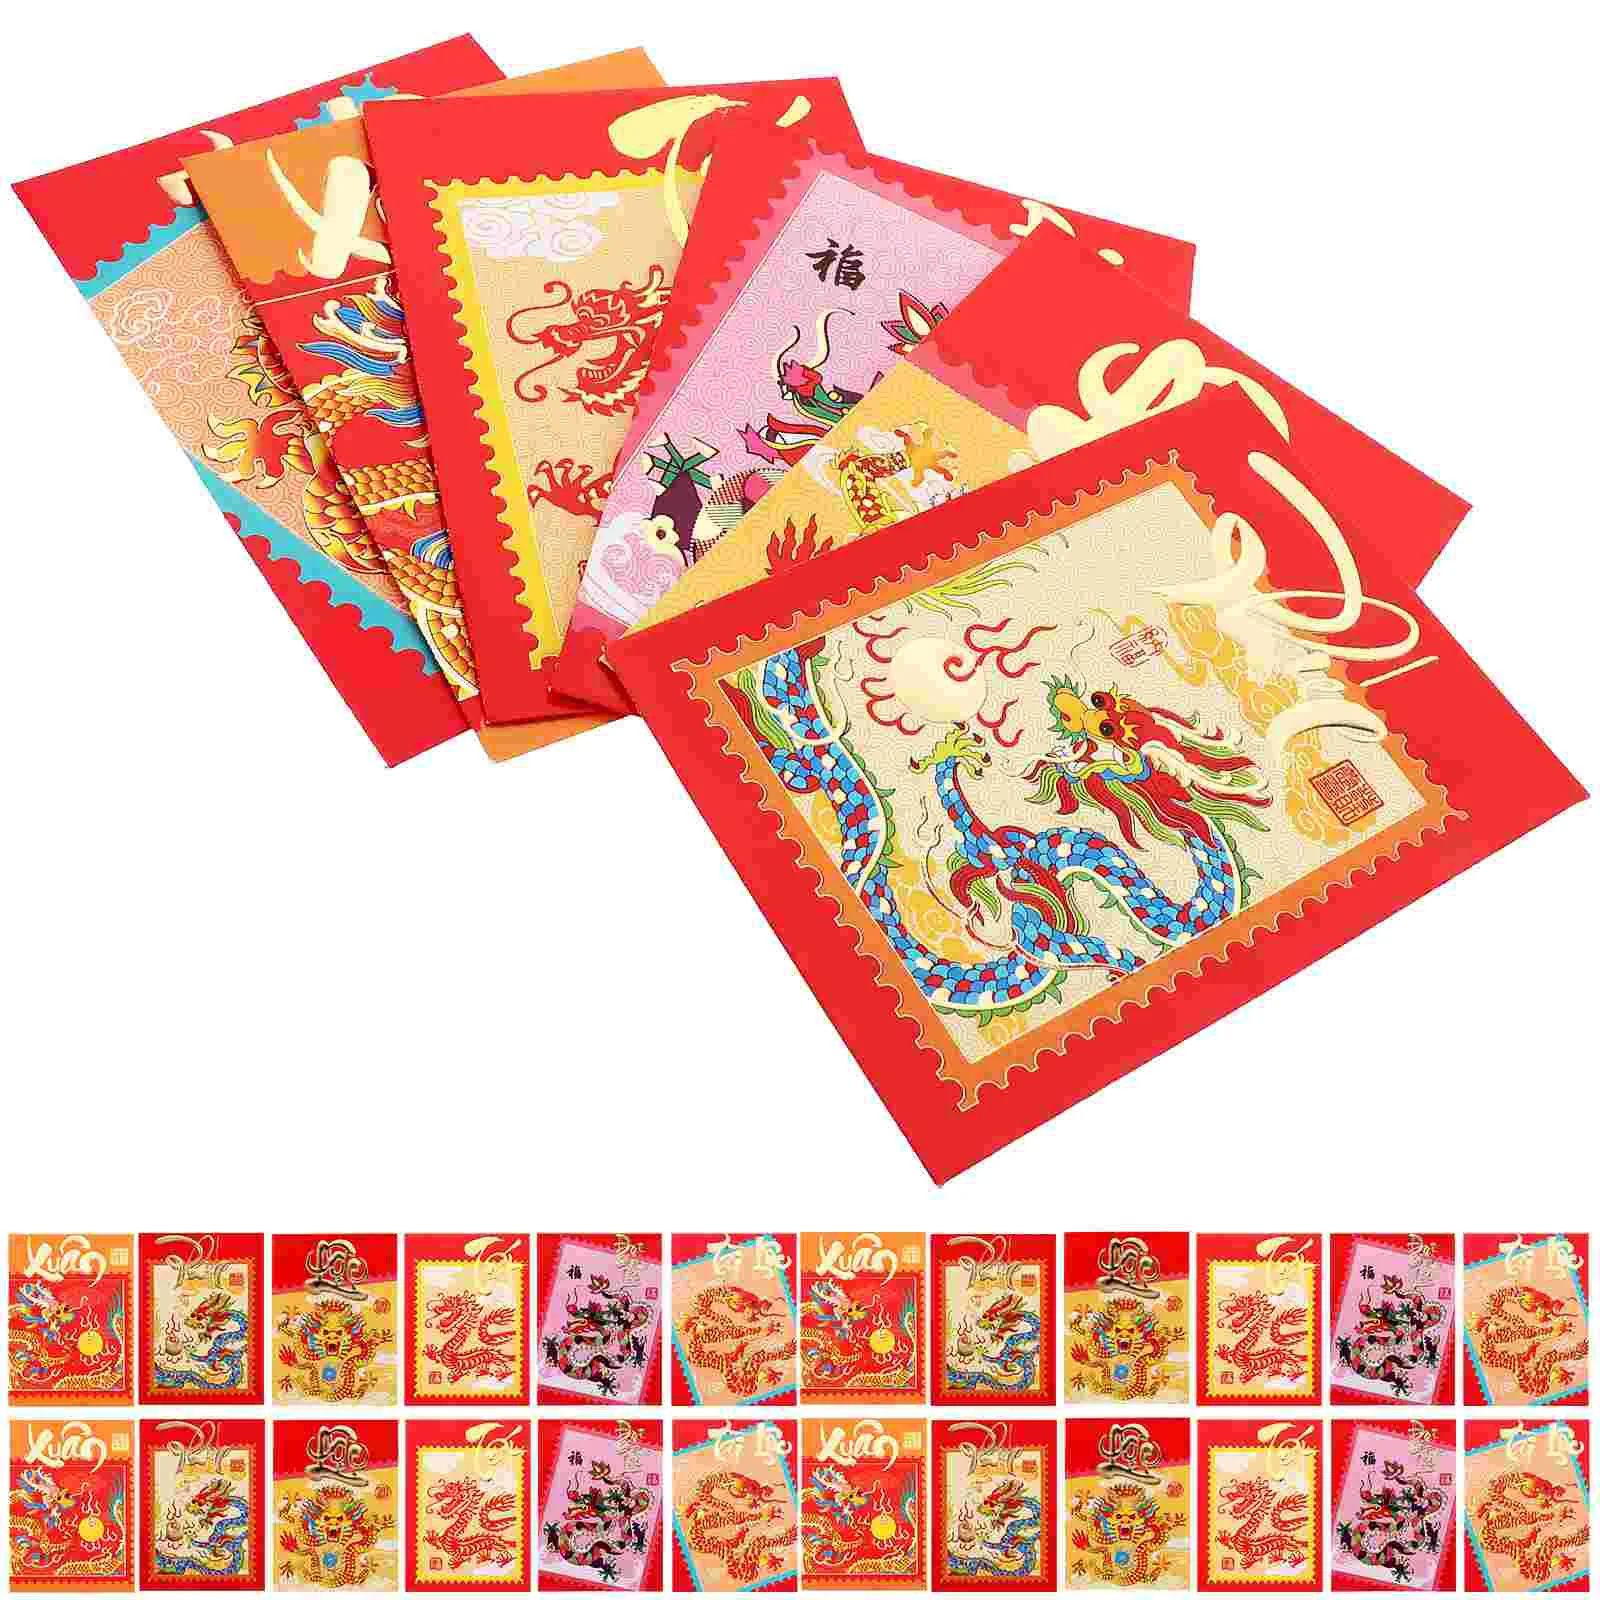 

Красные конверты на удачу для китайского Нового года, конверты HongBao с надписью «Год Дракона», красные конверты для китайского Нового года